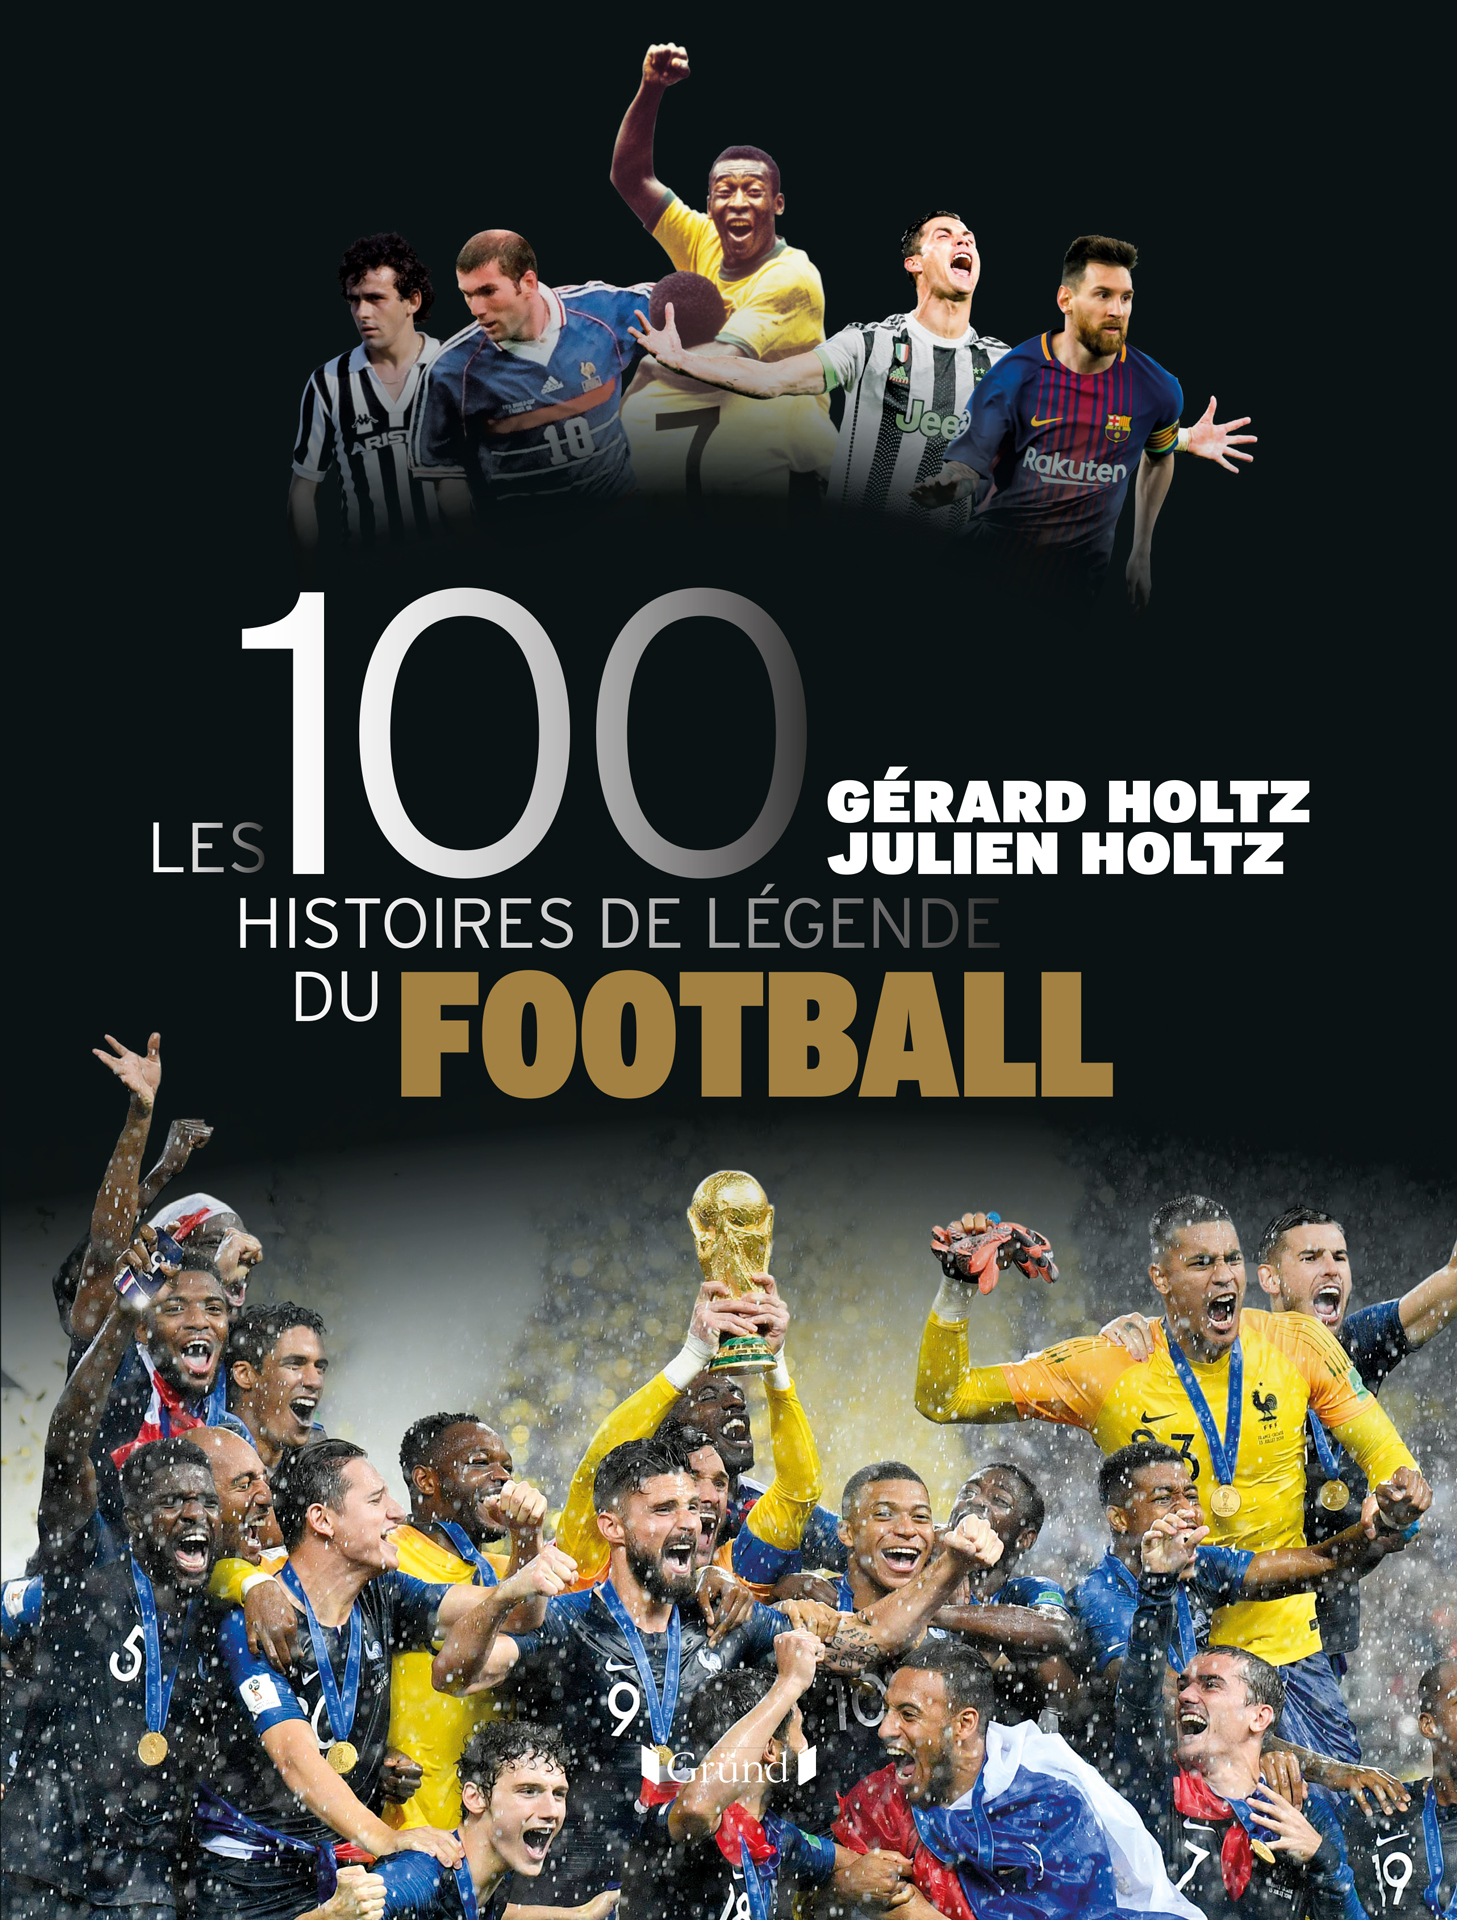 Les 100 Histoires de Légende du Football (Gérard Holtz, Julien Holtz)